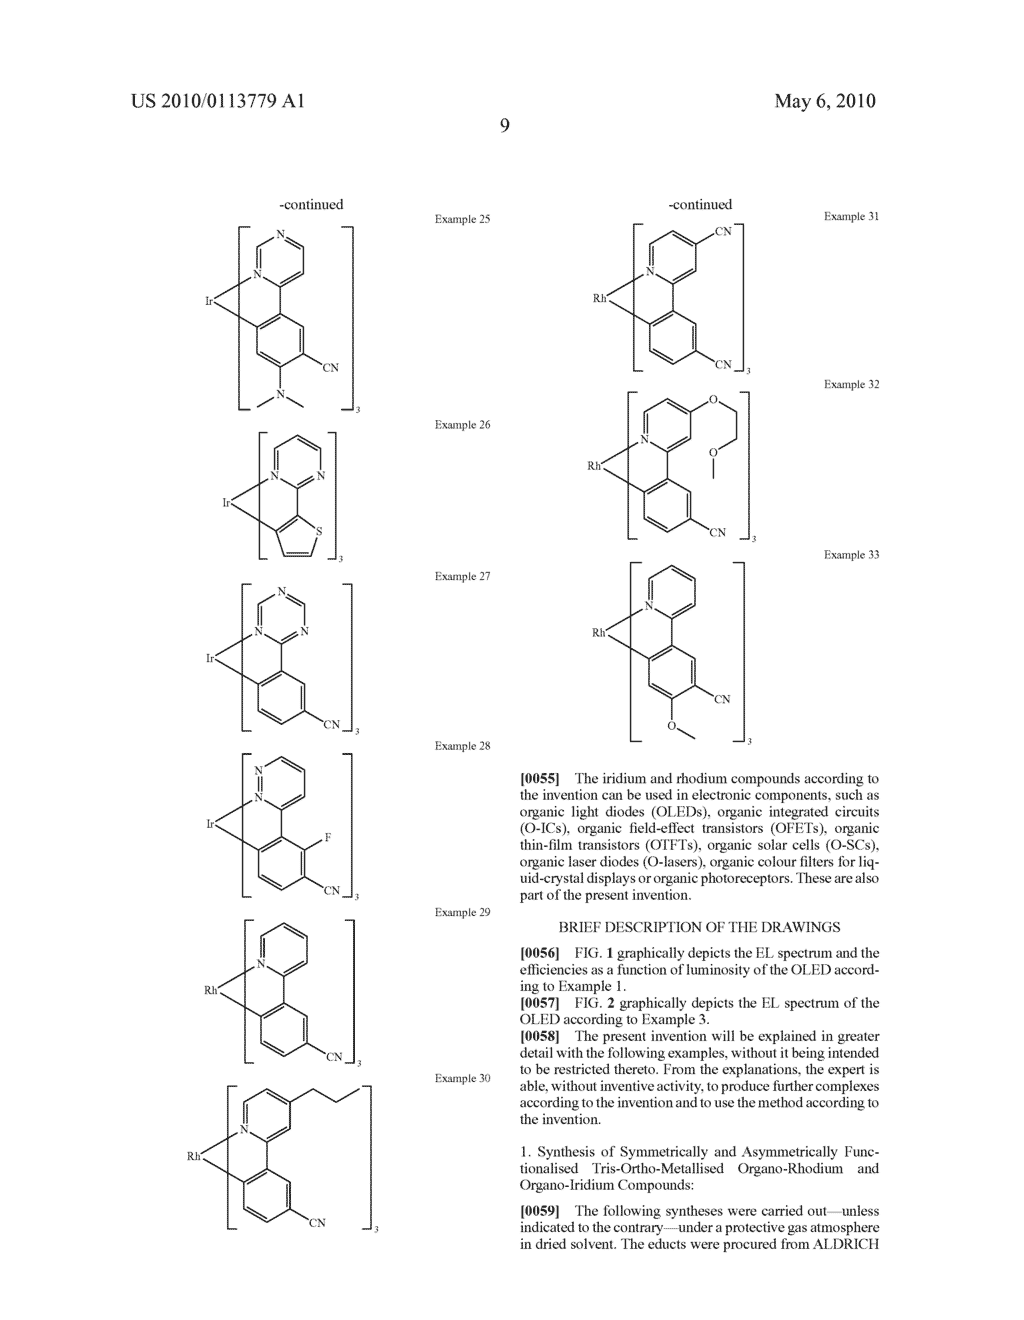 RHODIUM COMPLEXES AND IRIDIUM COMPLEXES - diagram, schematic, and image 12